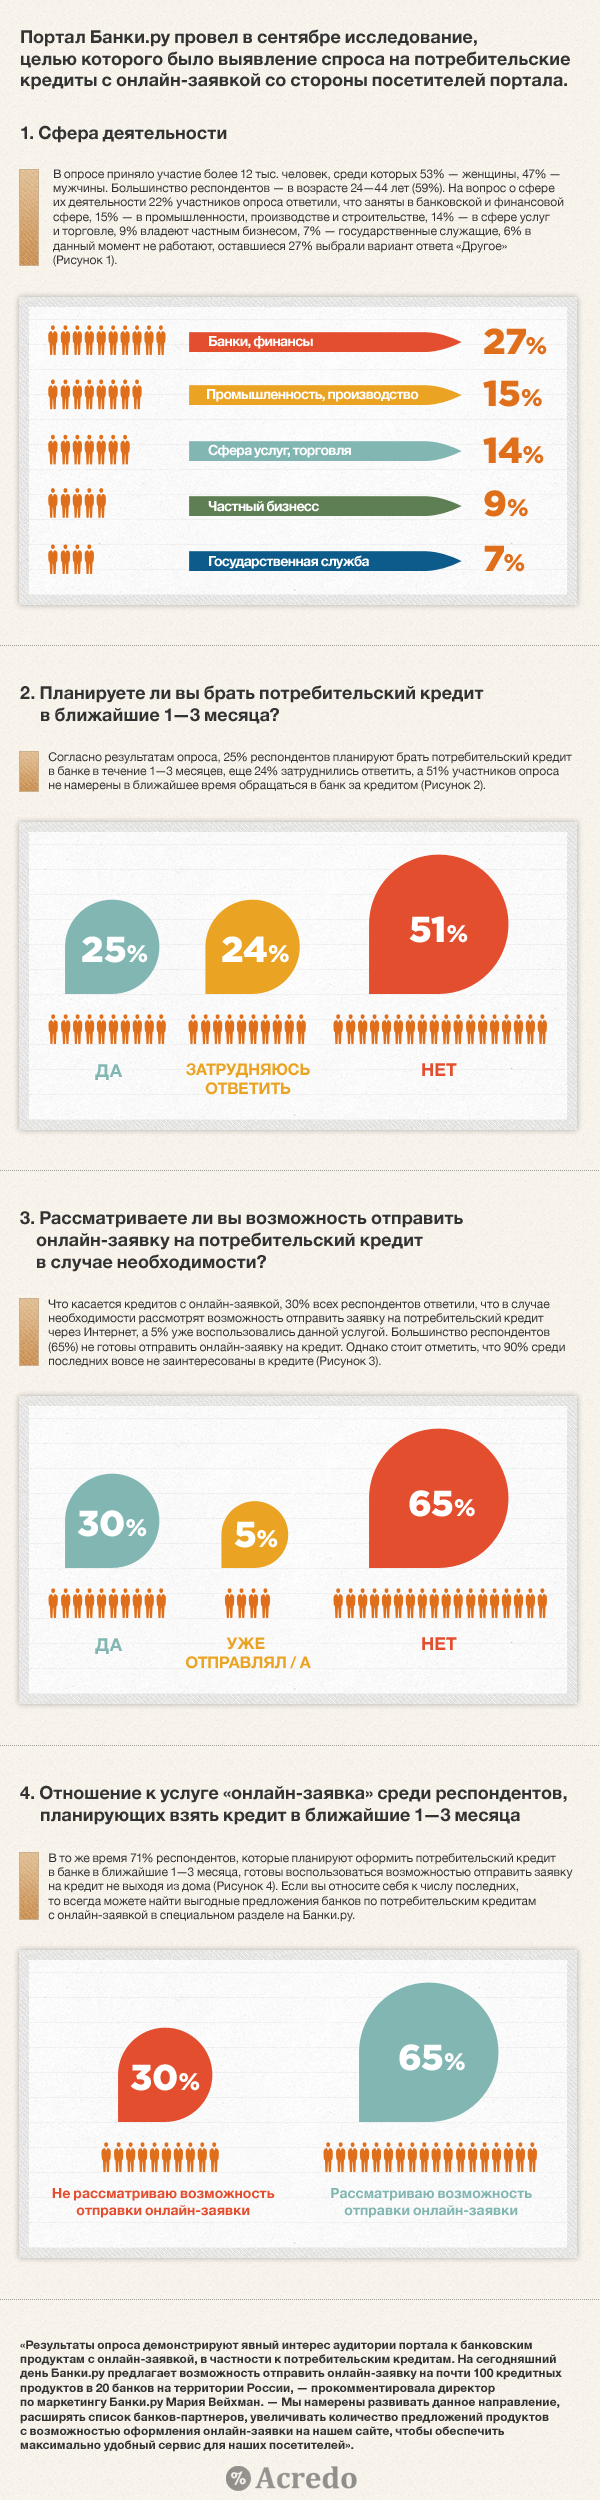 отношение Россиян к потребительским кредитам с онлайн заявкой